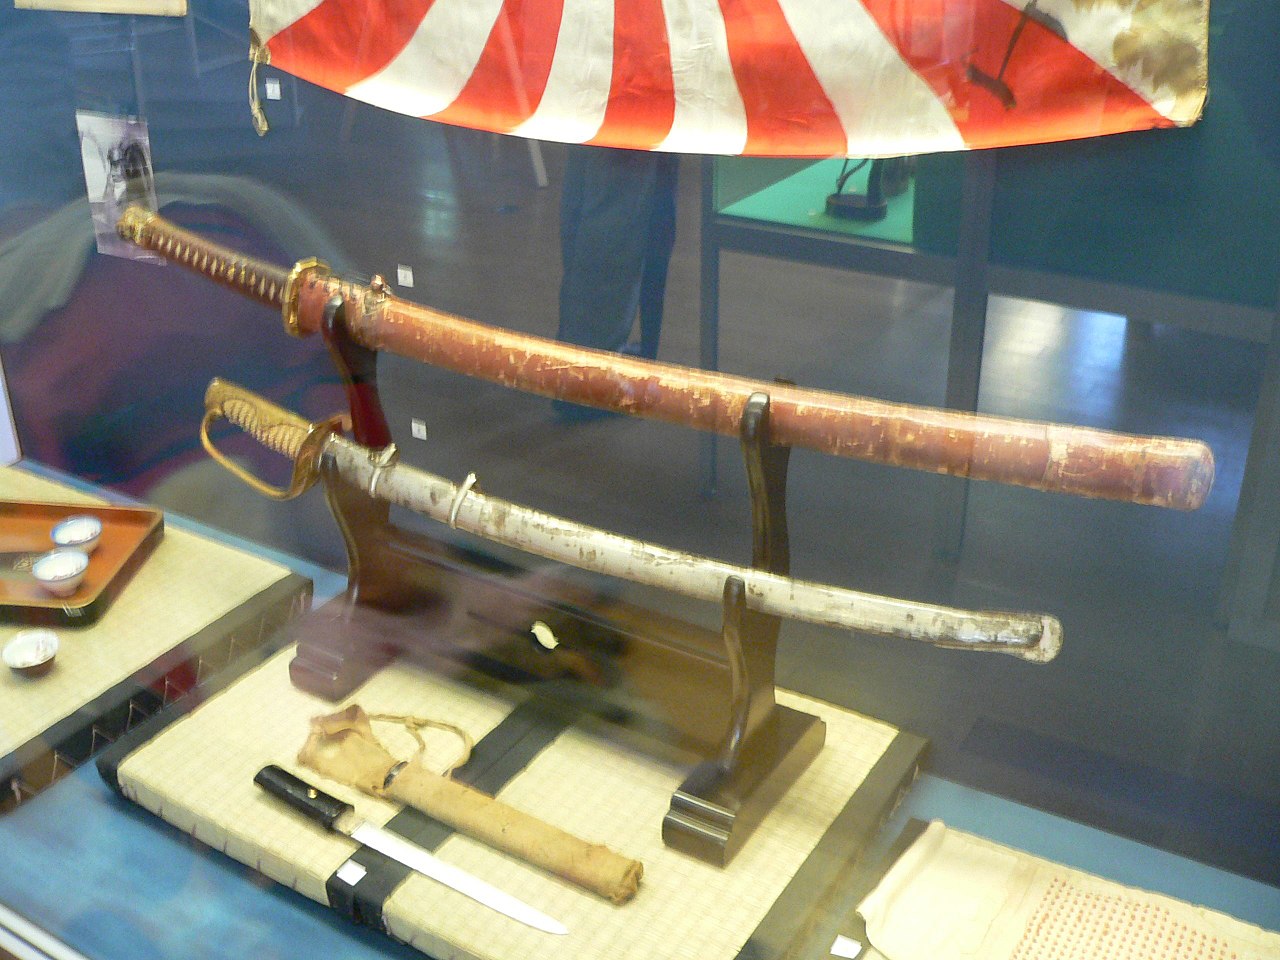 Comment la fin de l'ère des samouraïs au Japon a affecté ses épées